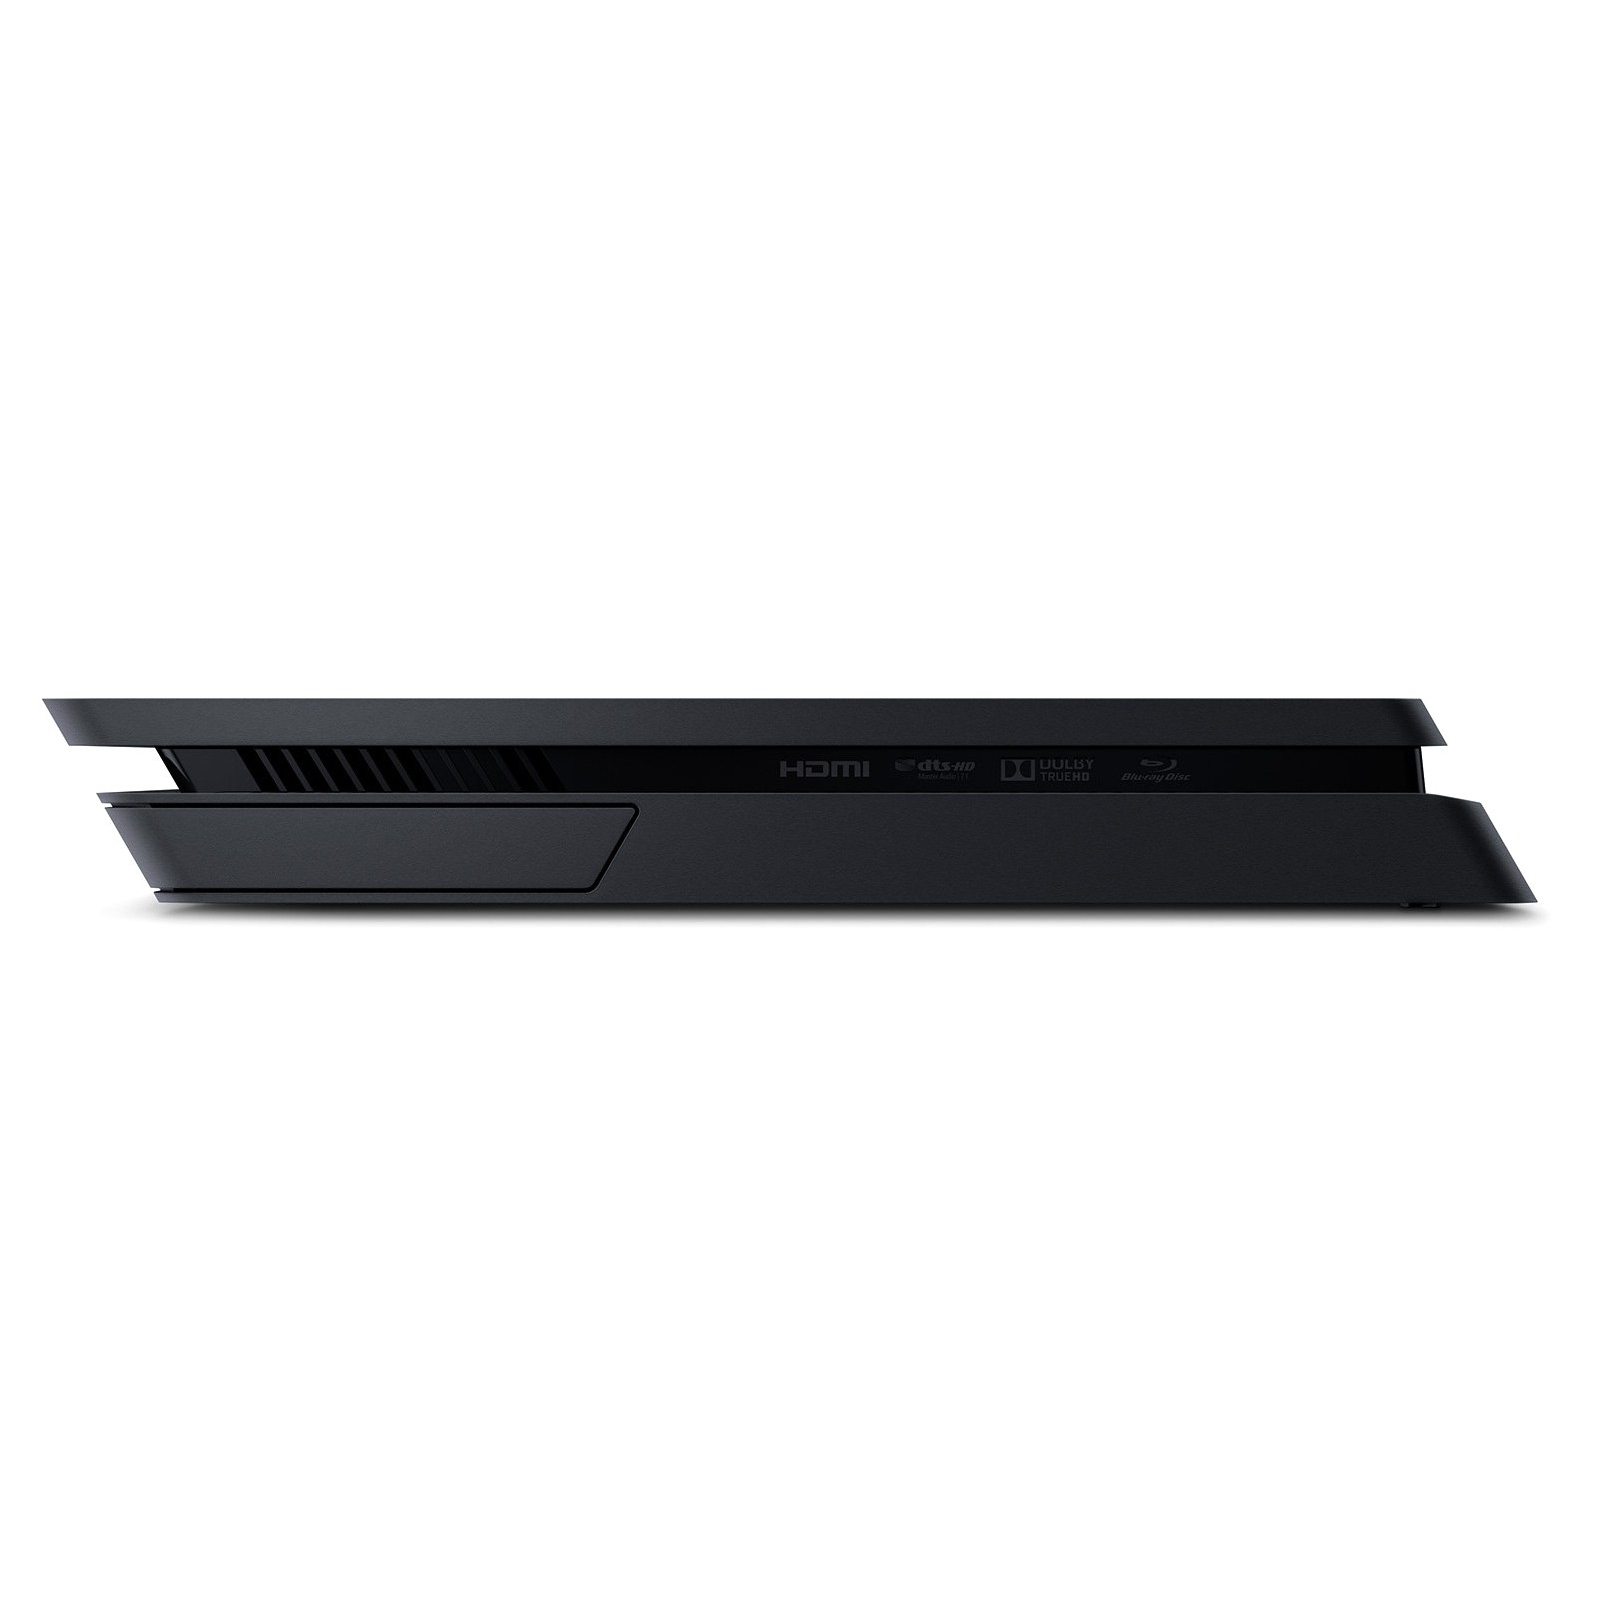 Игровая консоль Sony PlayStation 4 Slim 500Gb Black (CUH-2008) изображение 8